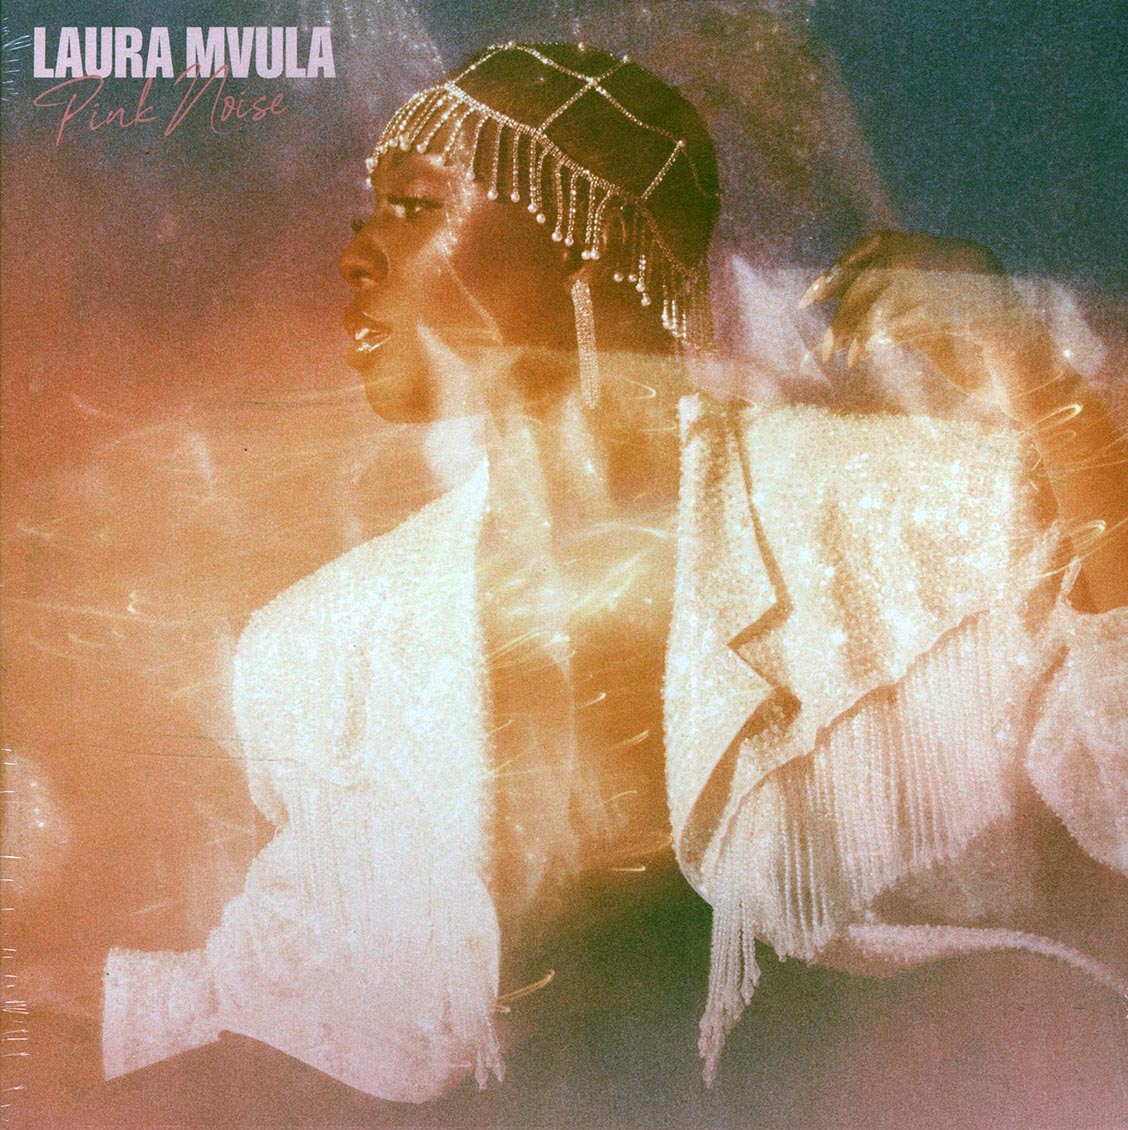 Laura Mvula - Pink Noise [2021 New Vinyl Record LP]